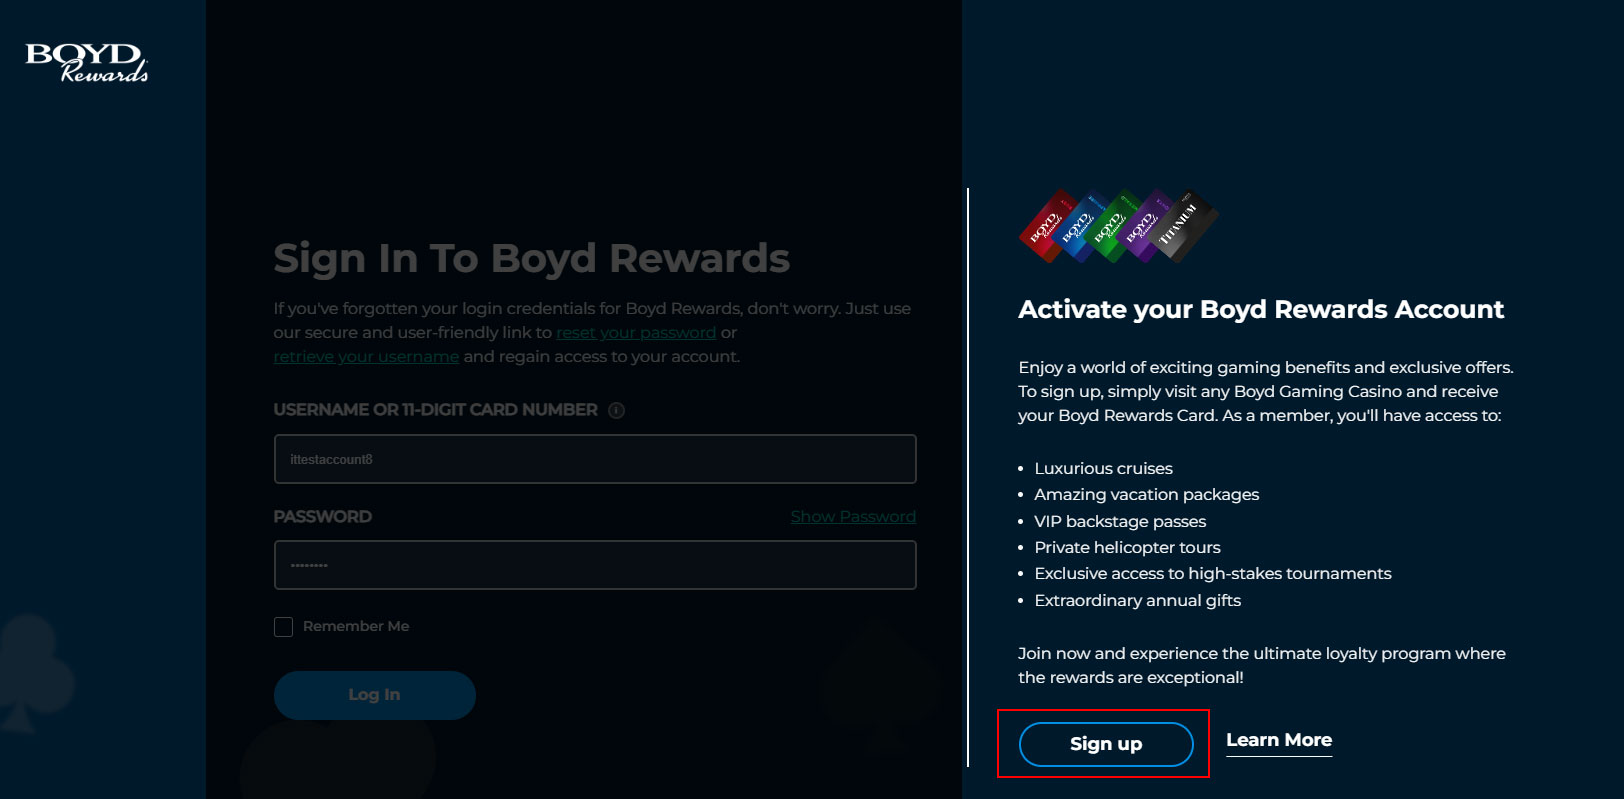 boyd rewards sign up screen